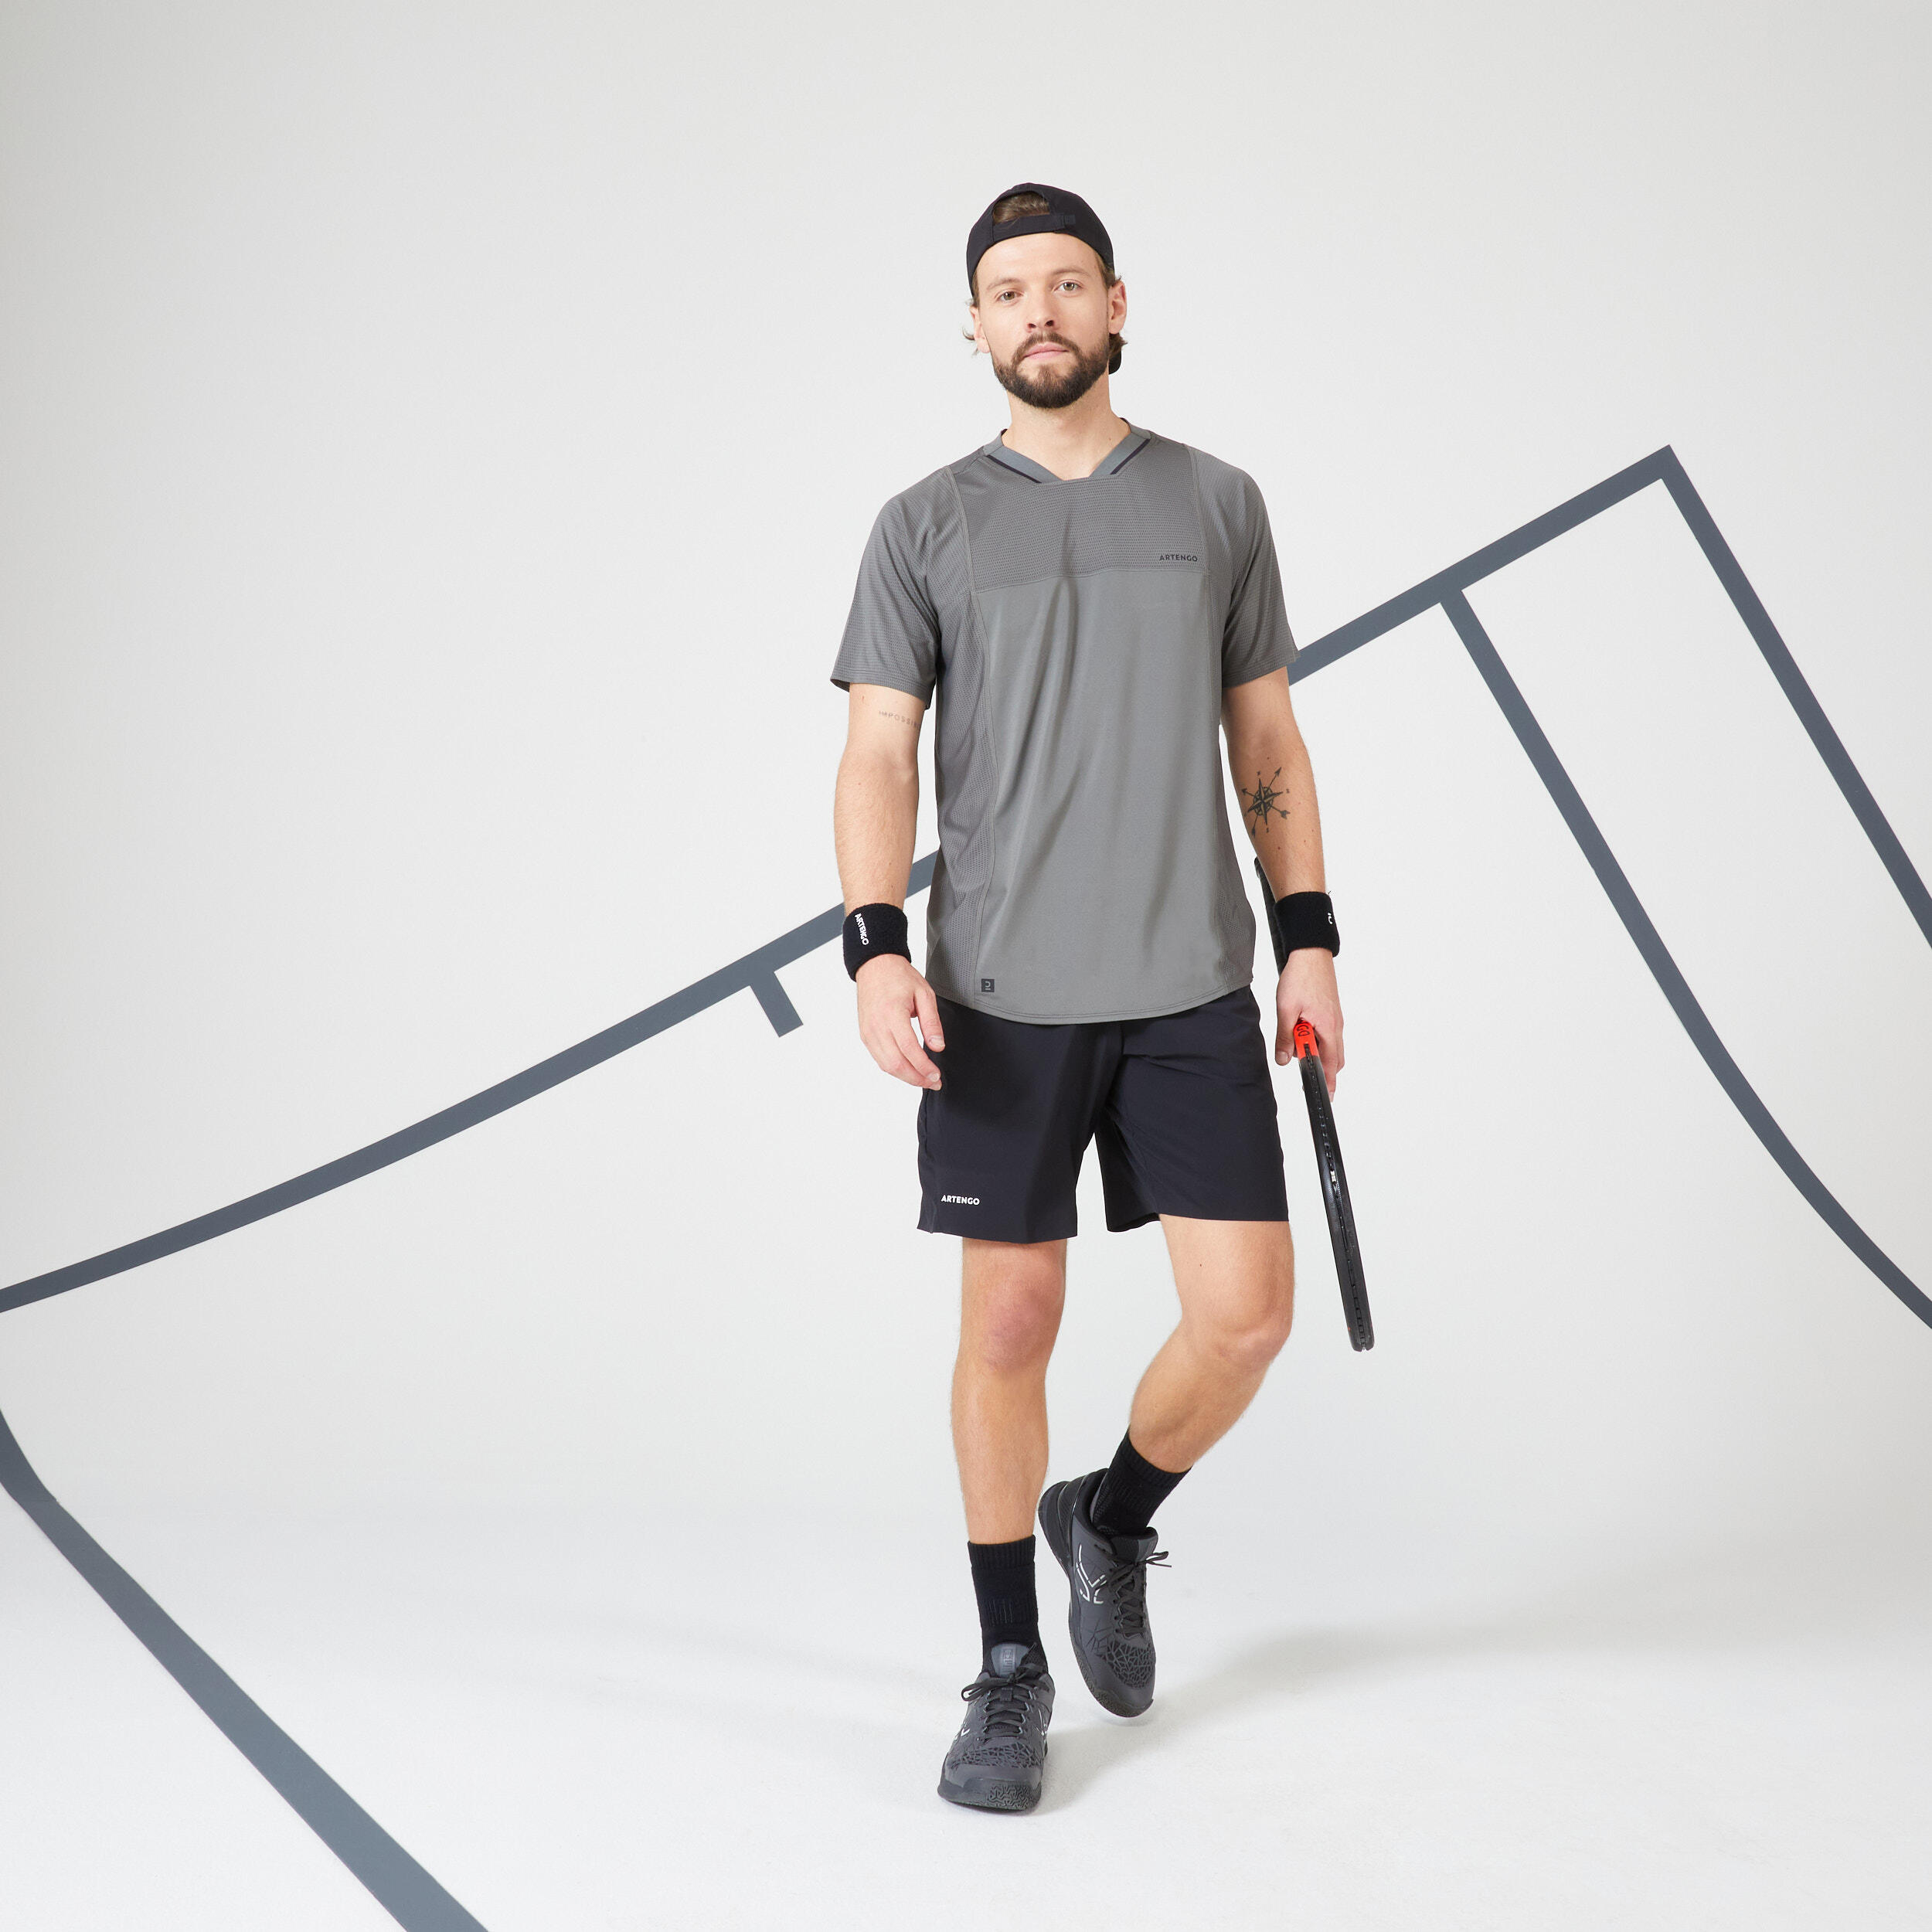 Men's Tennis Short-Sleeved T-Shirt Dry VN - Khaki/Black 3/11